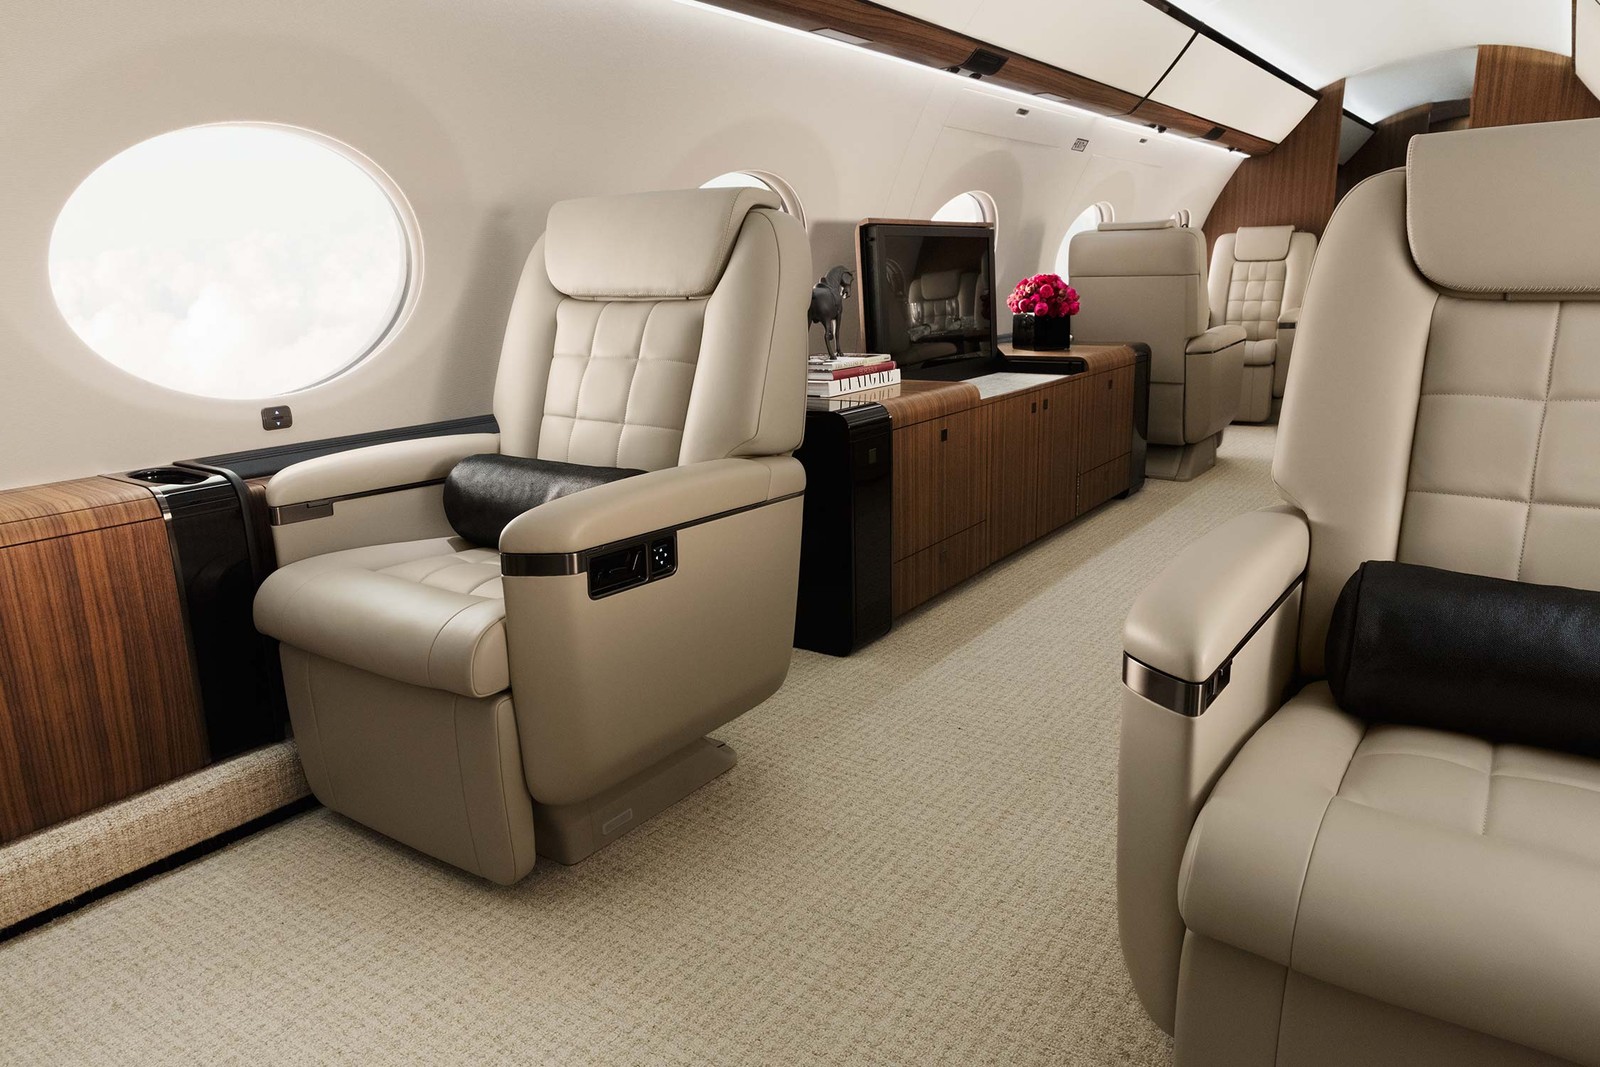 Aeronave tem interior luxuoso, com capacidade para 19 pessoas sentadas — Foto: Divulgação